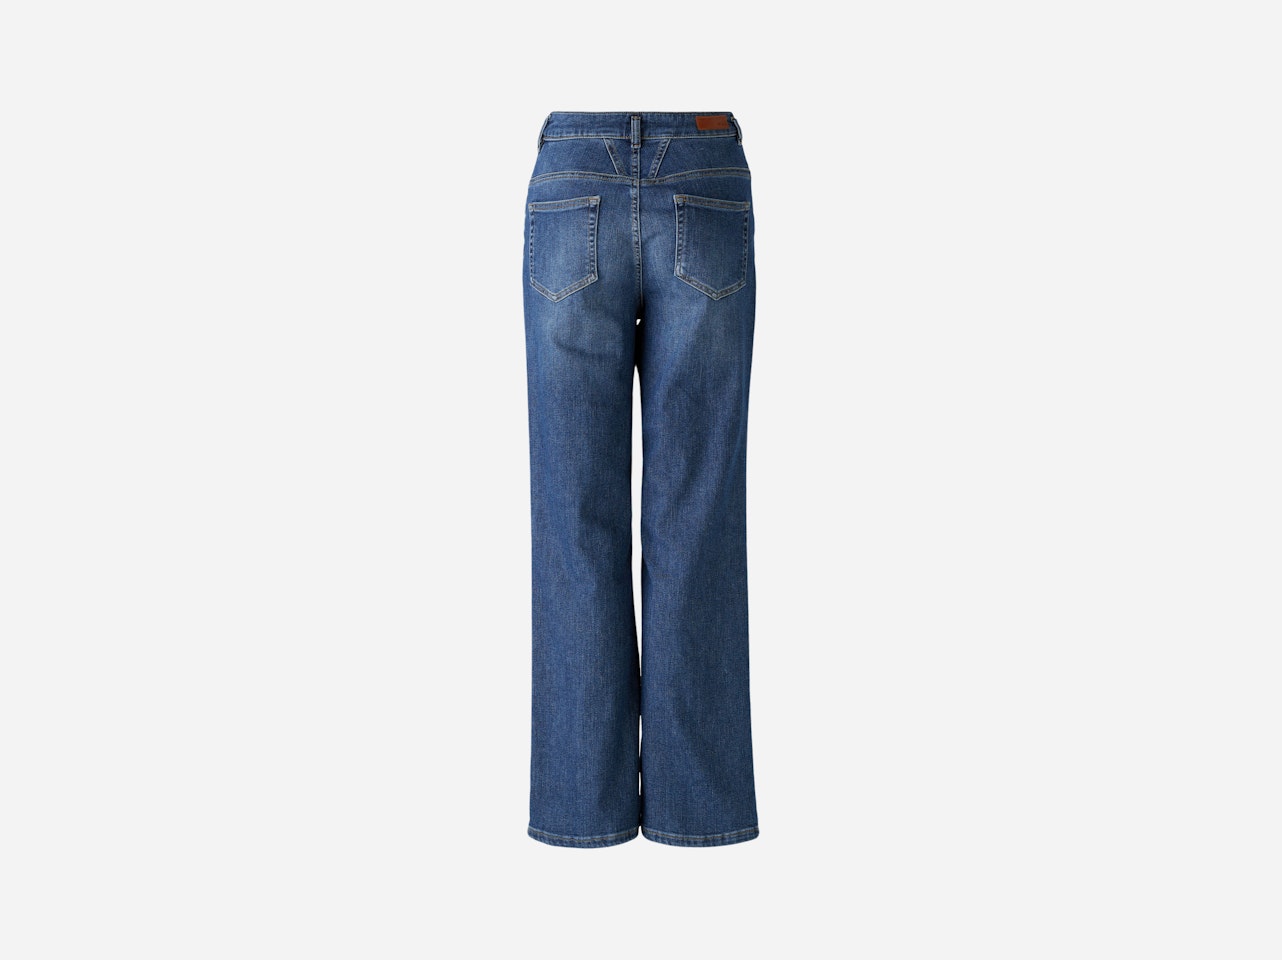 Bild 8 von THE STRAIGHT jeans wide Leg, mid waist, regular in darkblue denim | Oui